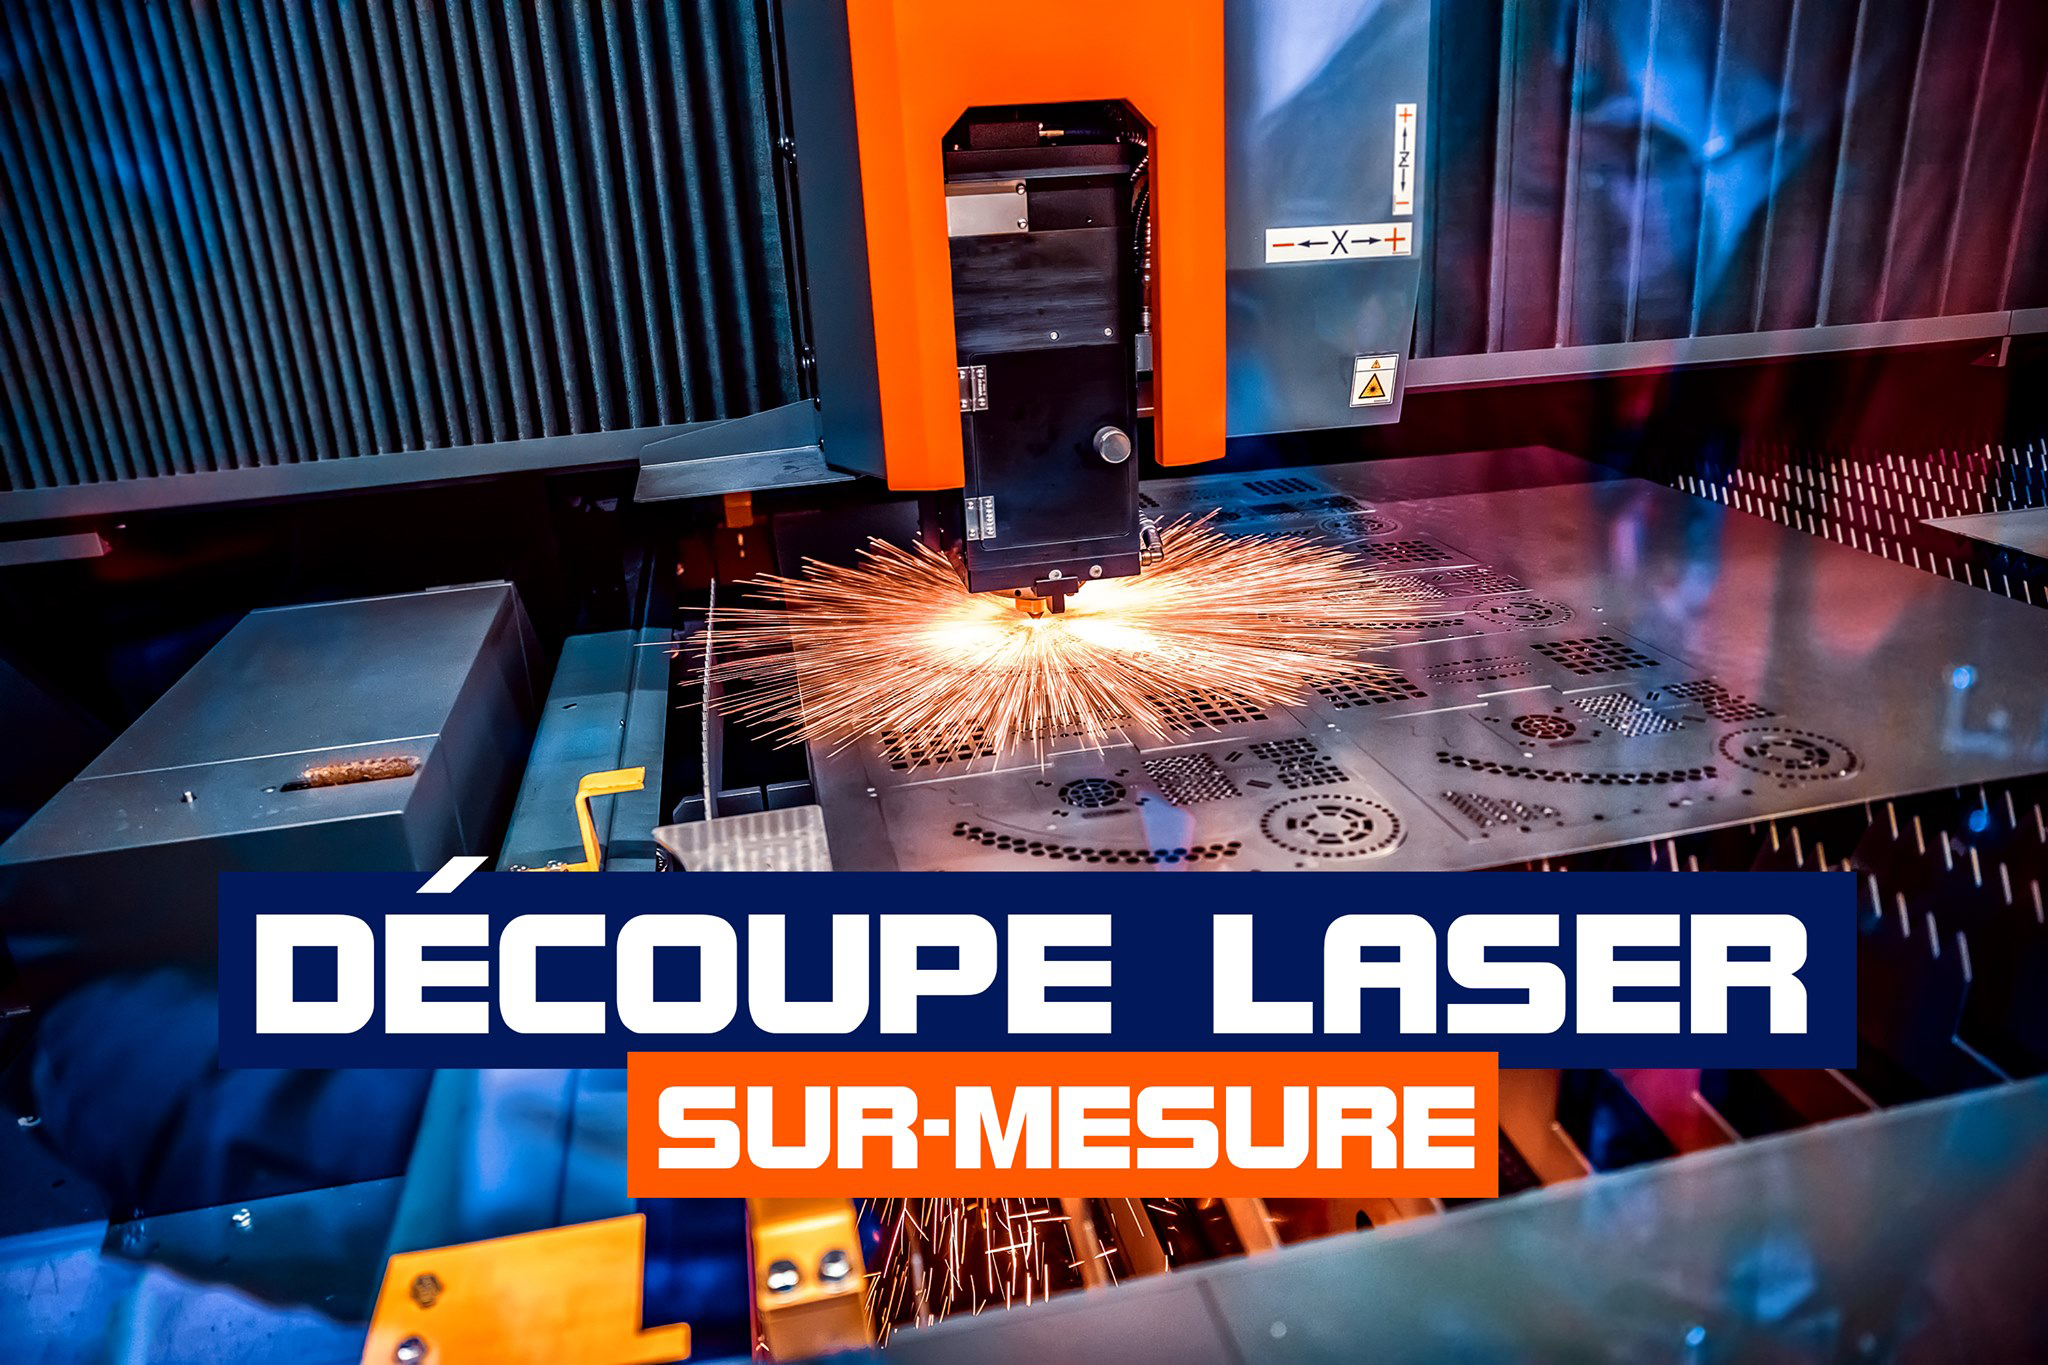 Découpe laser sur-mesure by CTM Laser